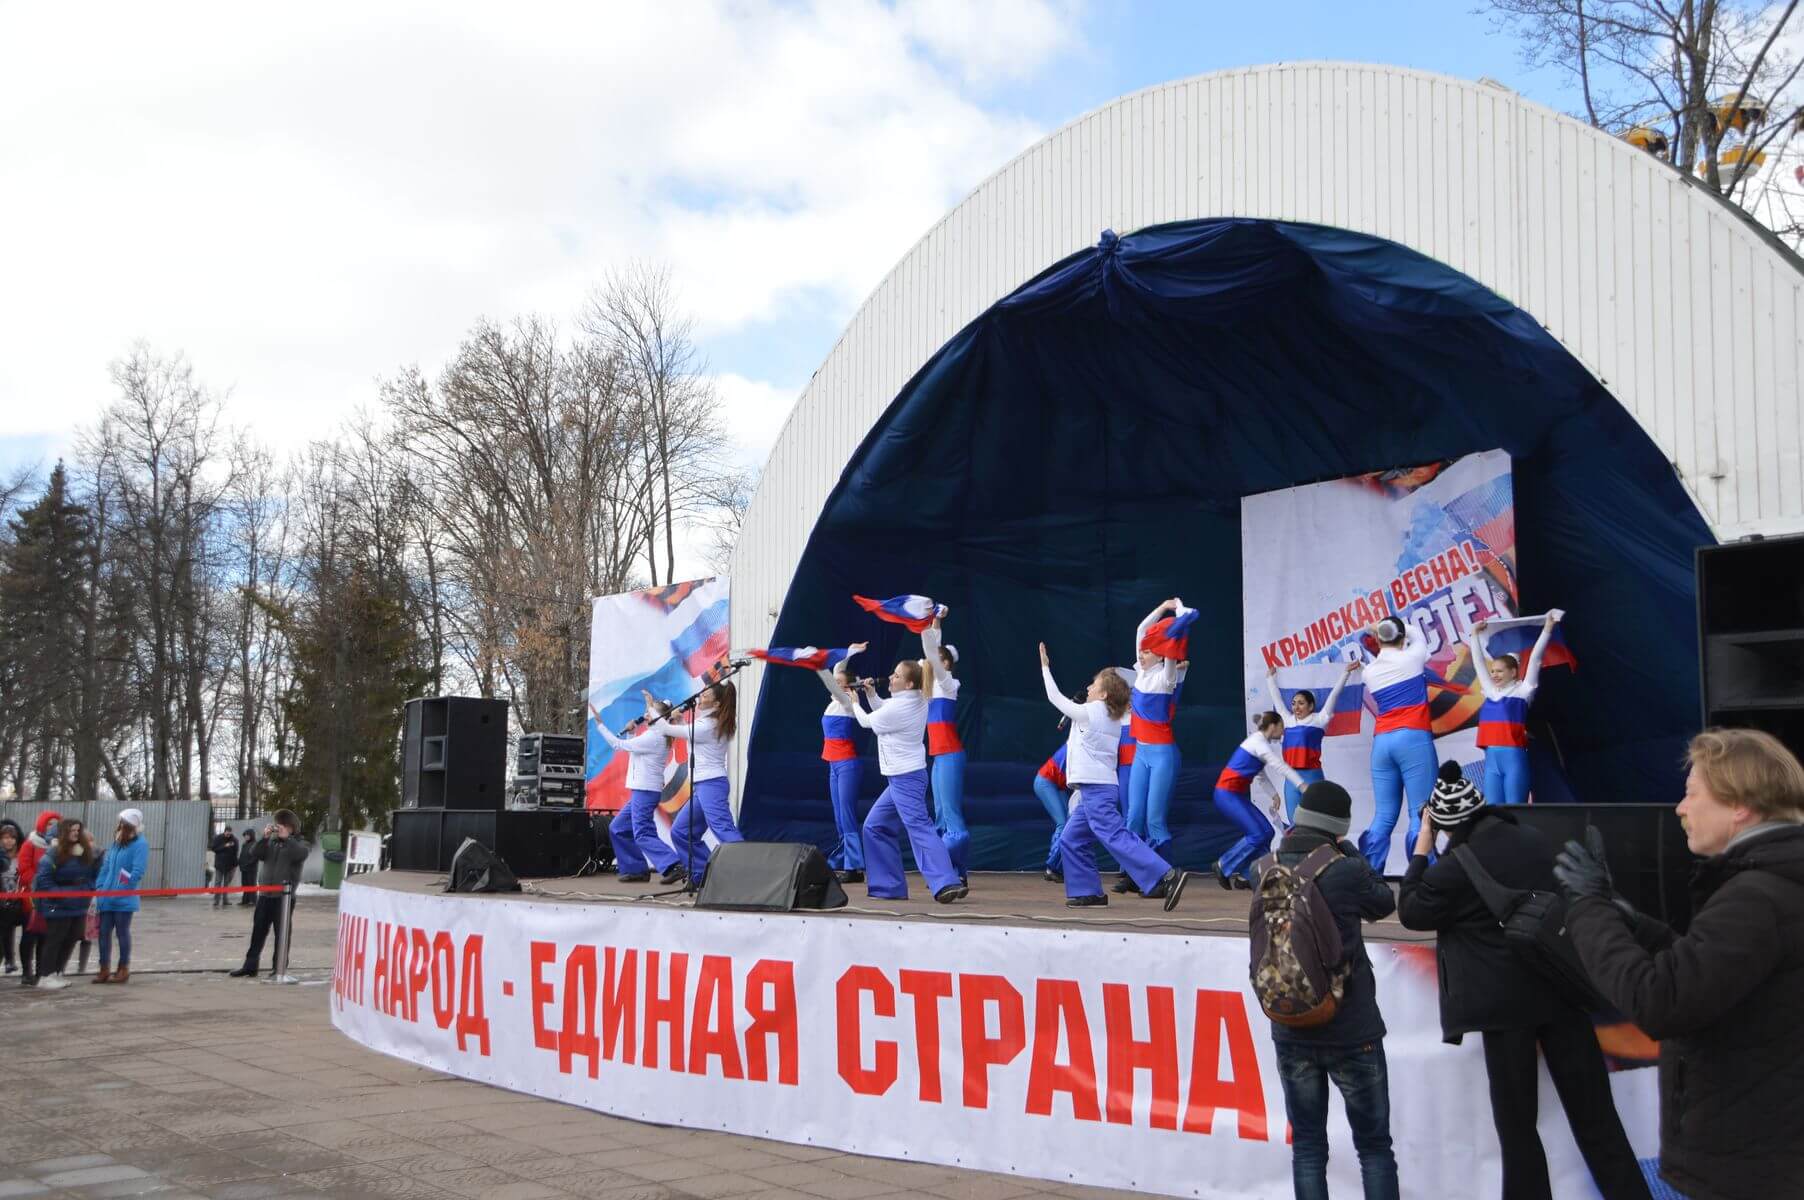 В Твери отпразднуют годовщину воссоединения России и Крыма